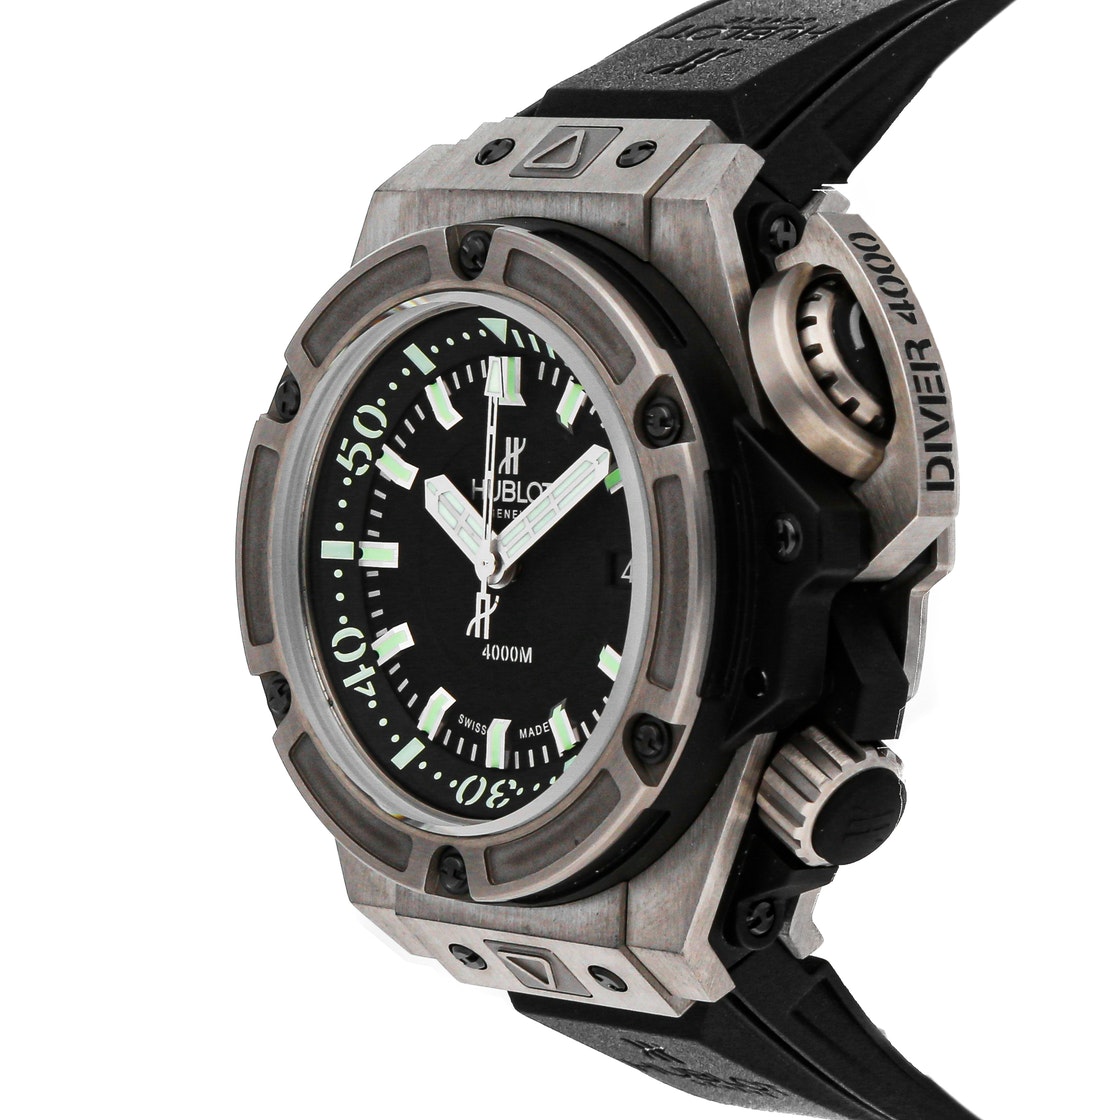 

Hublot Black Titanium Big Bang King Power "Oceanographique" 4000m Limited Edition 731.NX.1190.RX Men's Wristwatch 48 MM